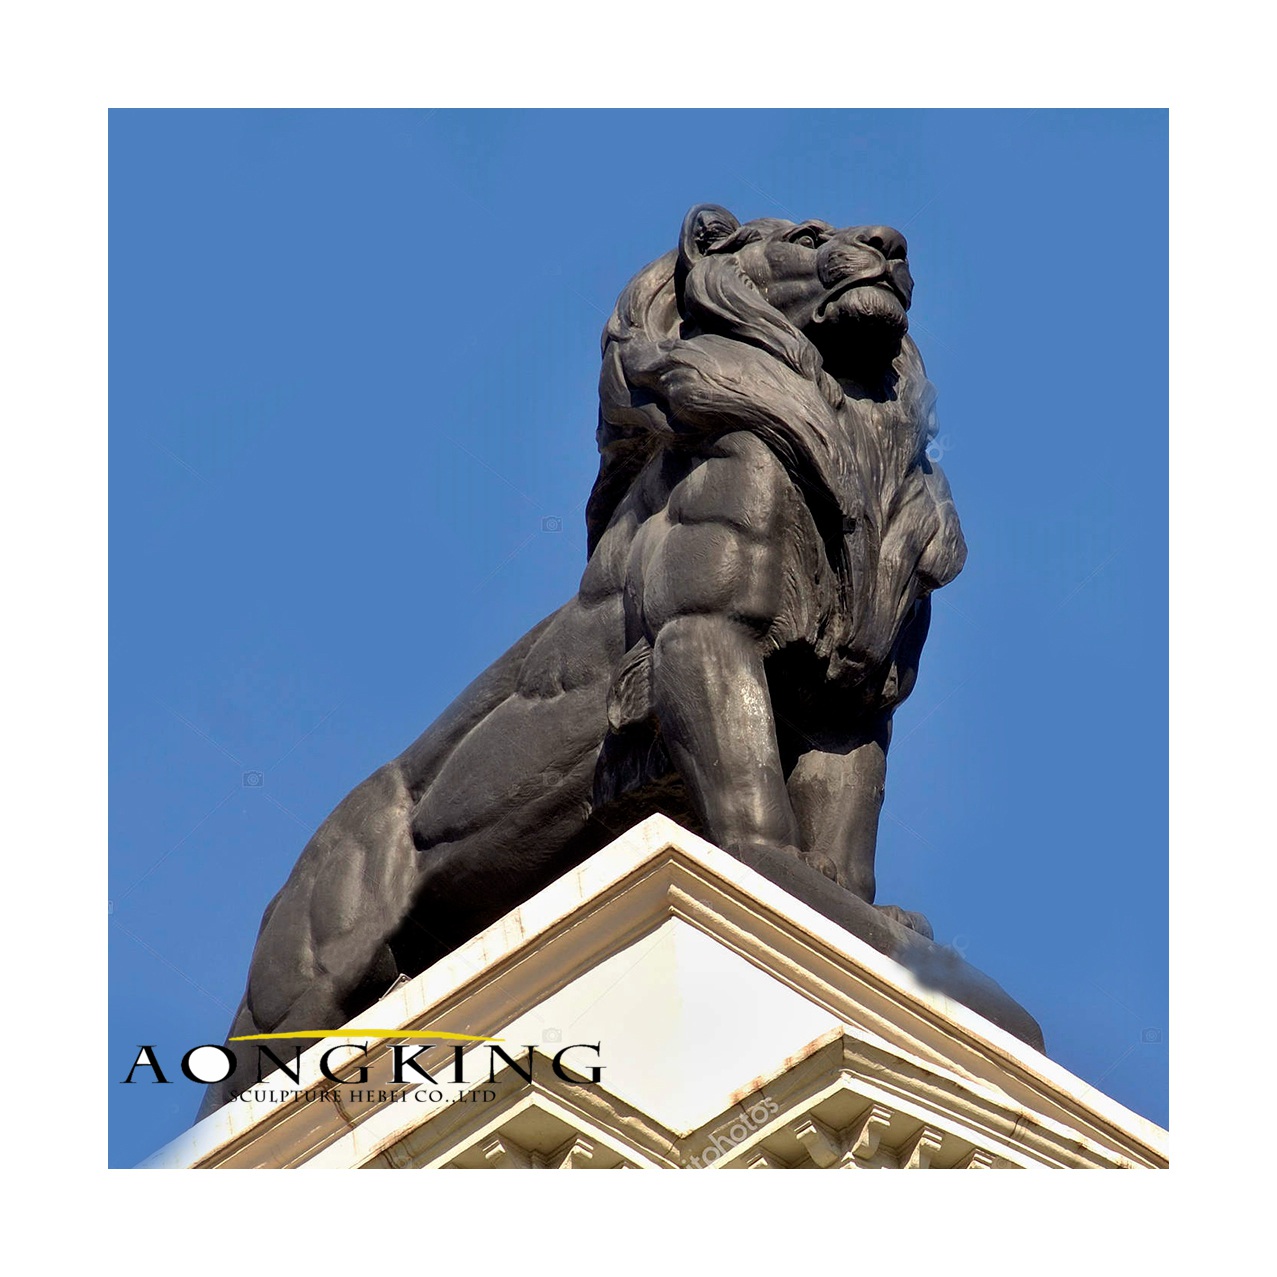 Large bronze lion sculpture